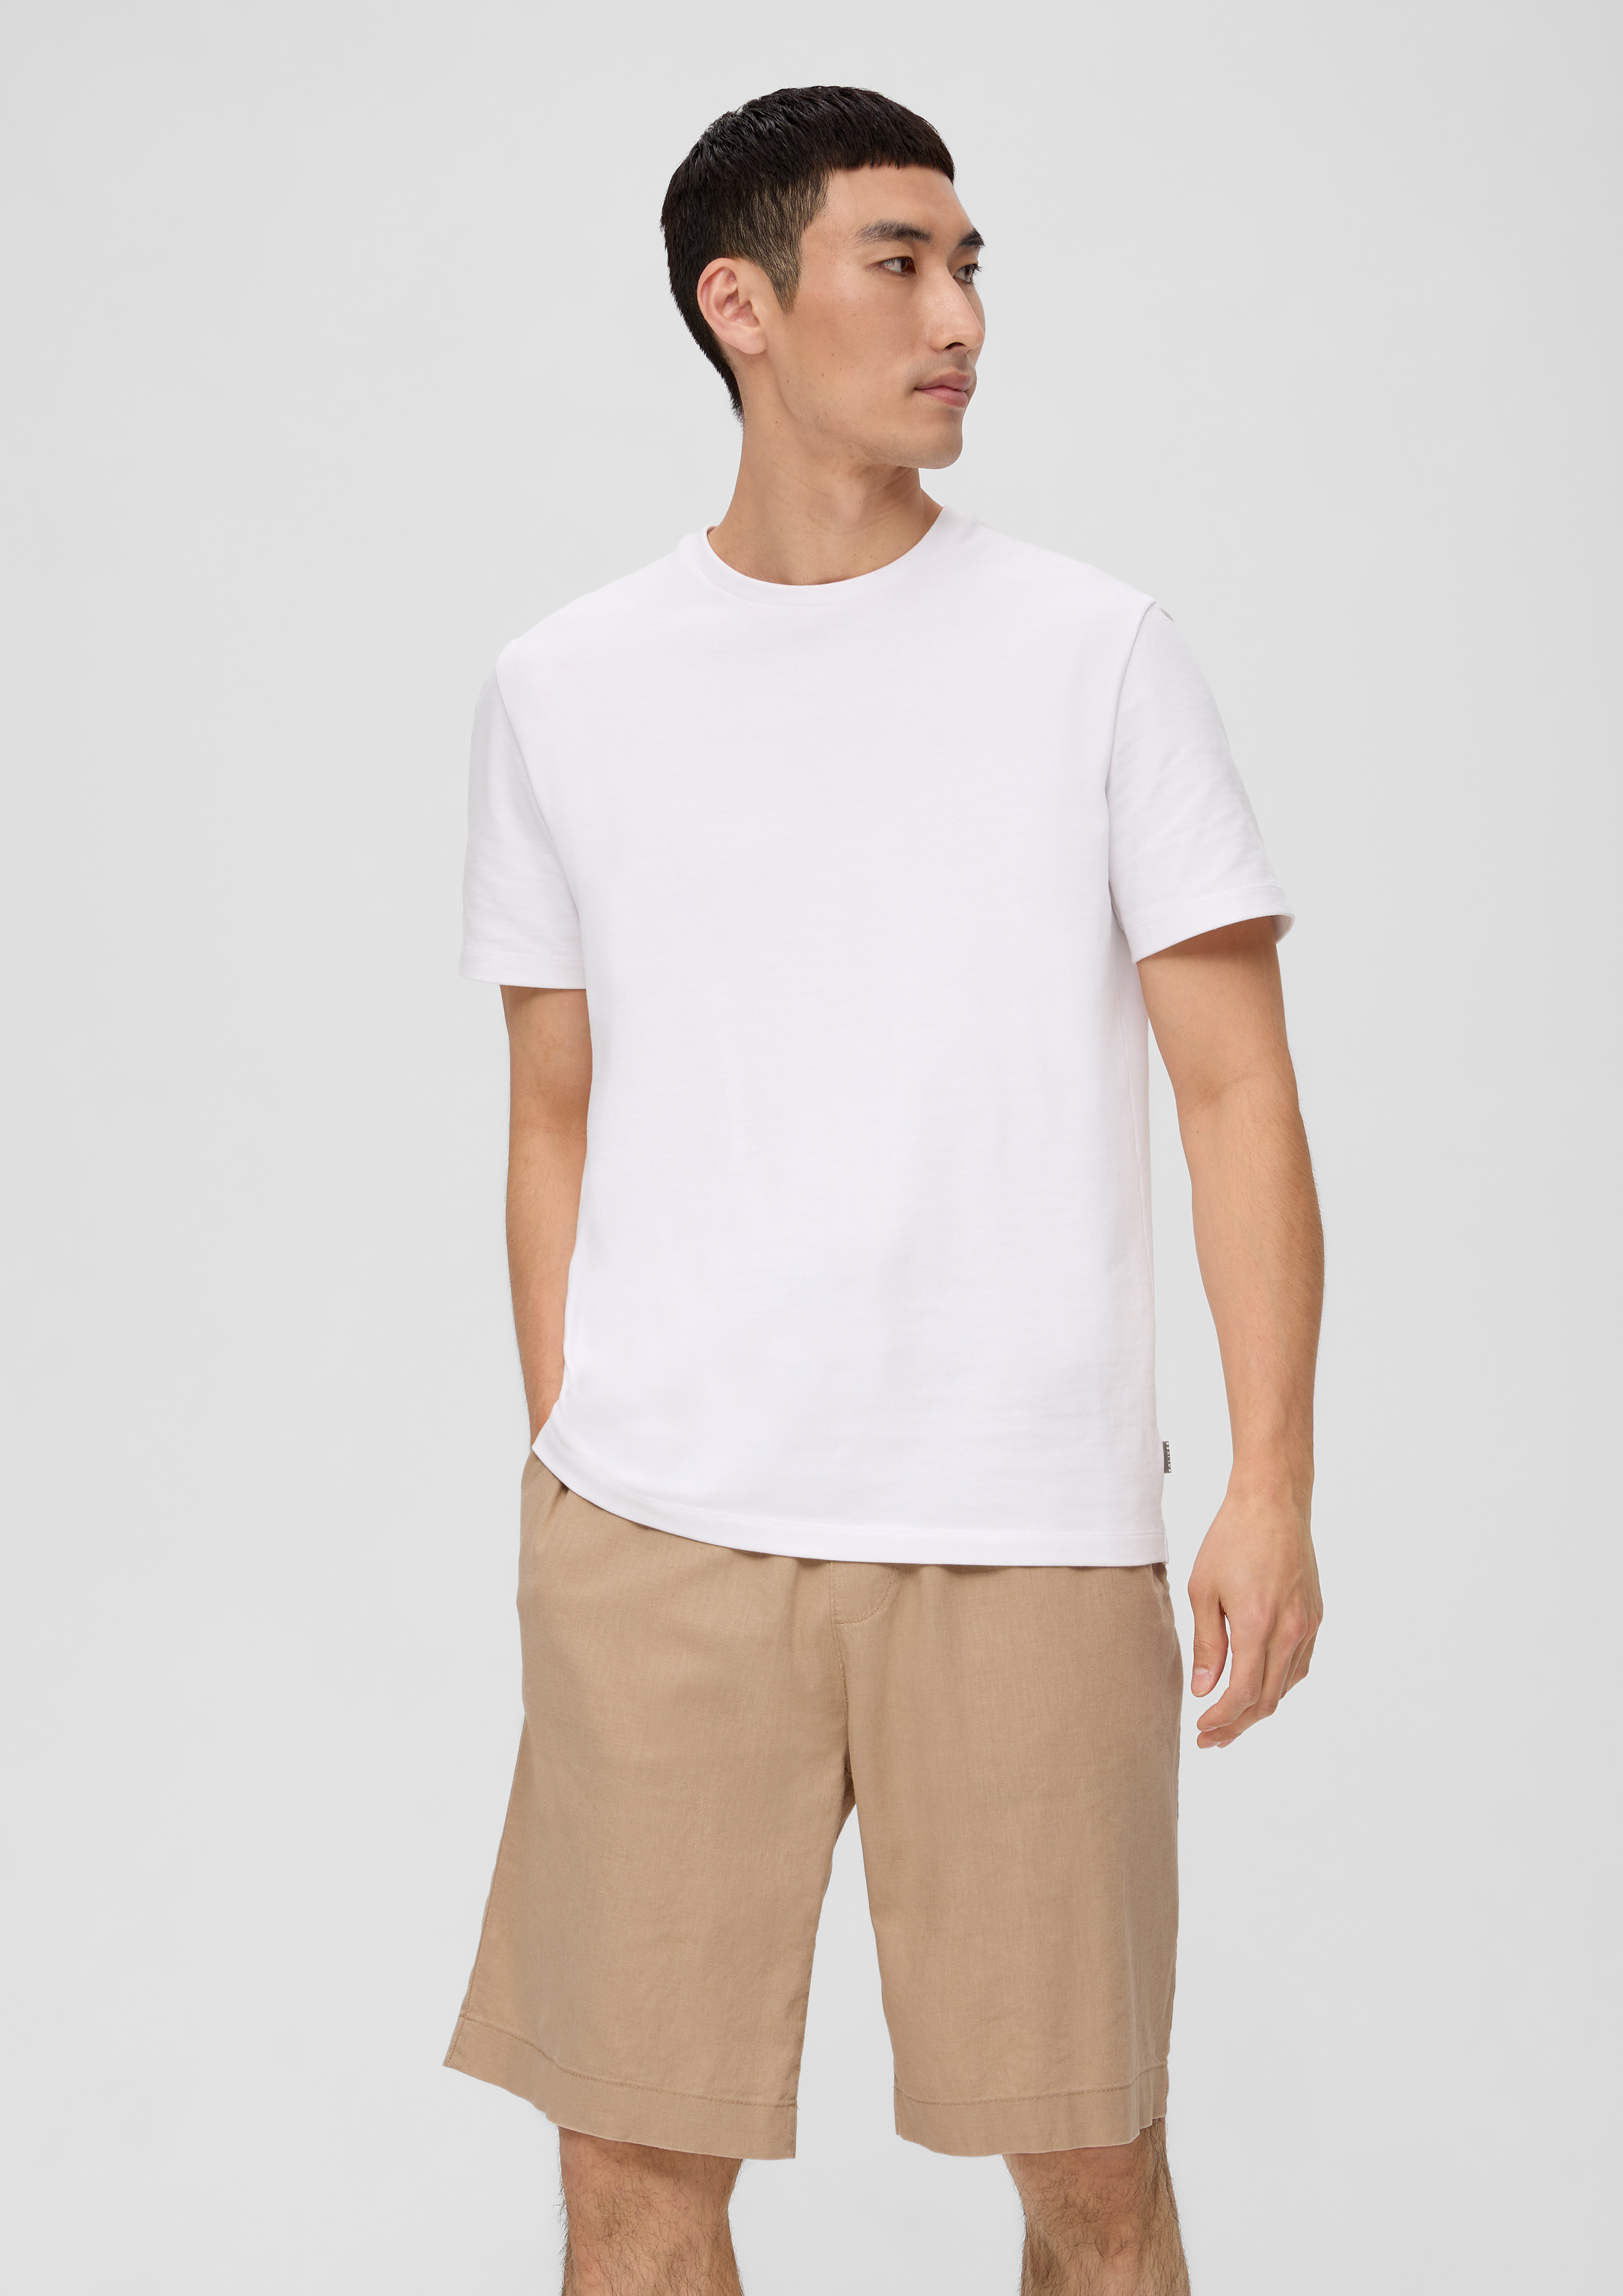 Bermuda shorts in blended linen - white